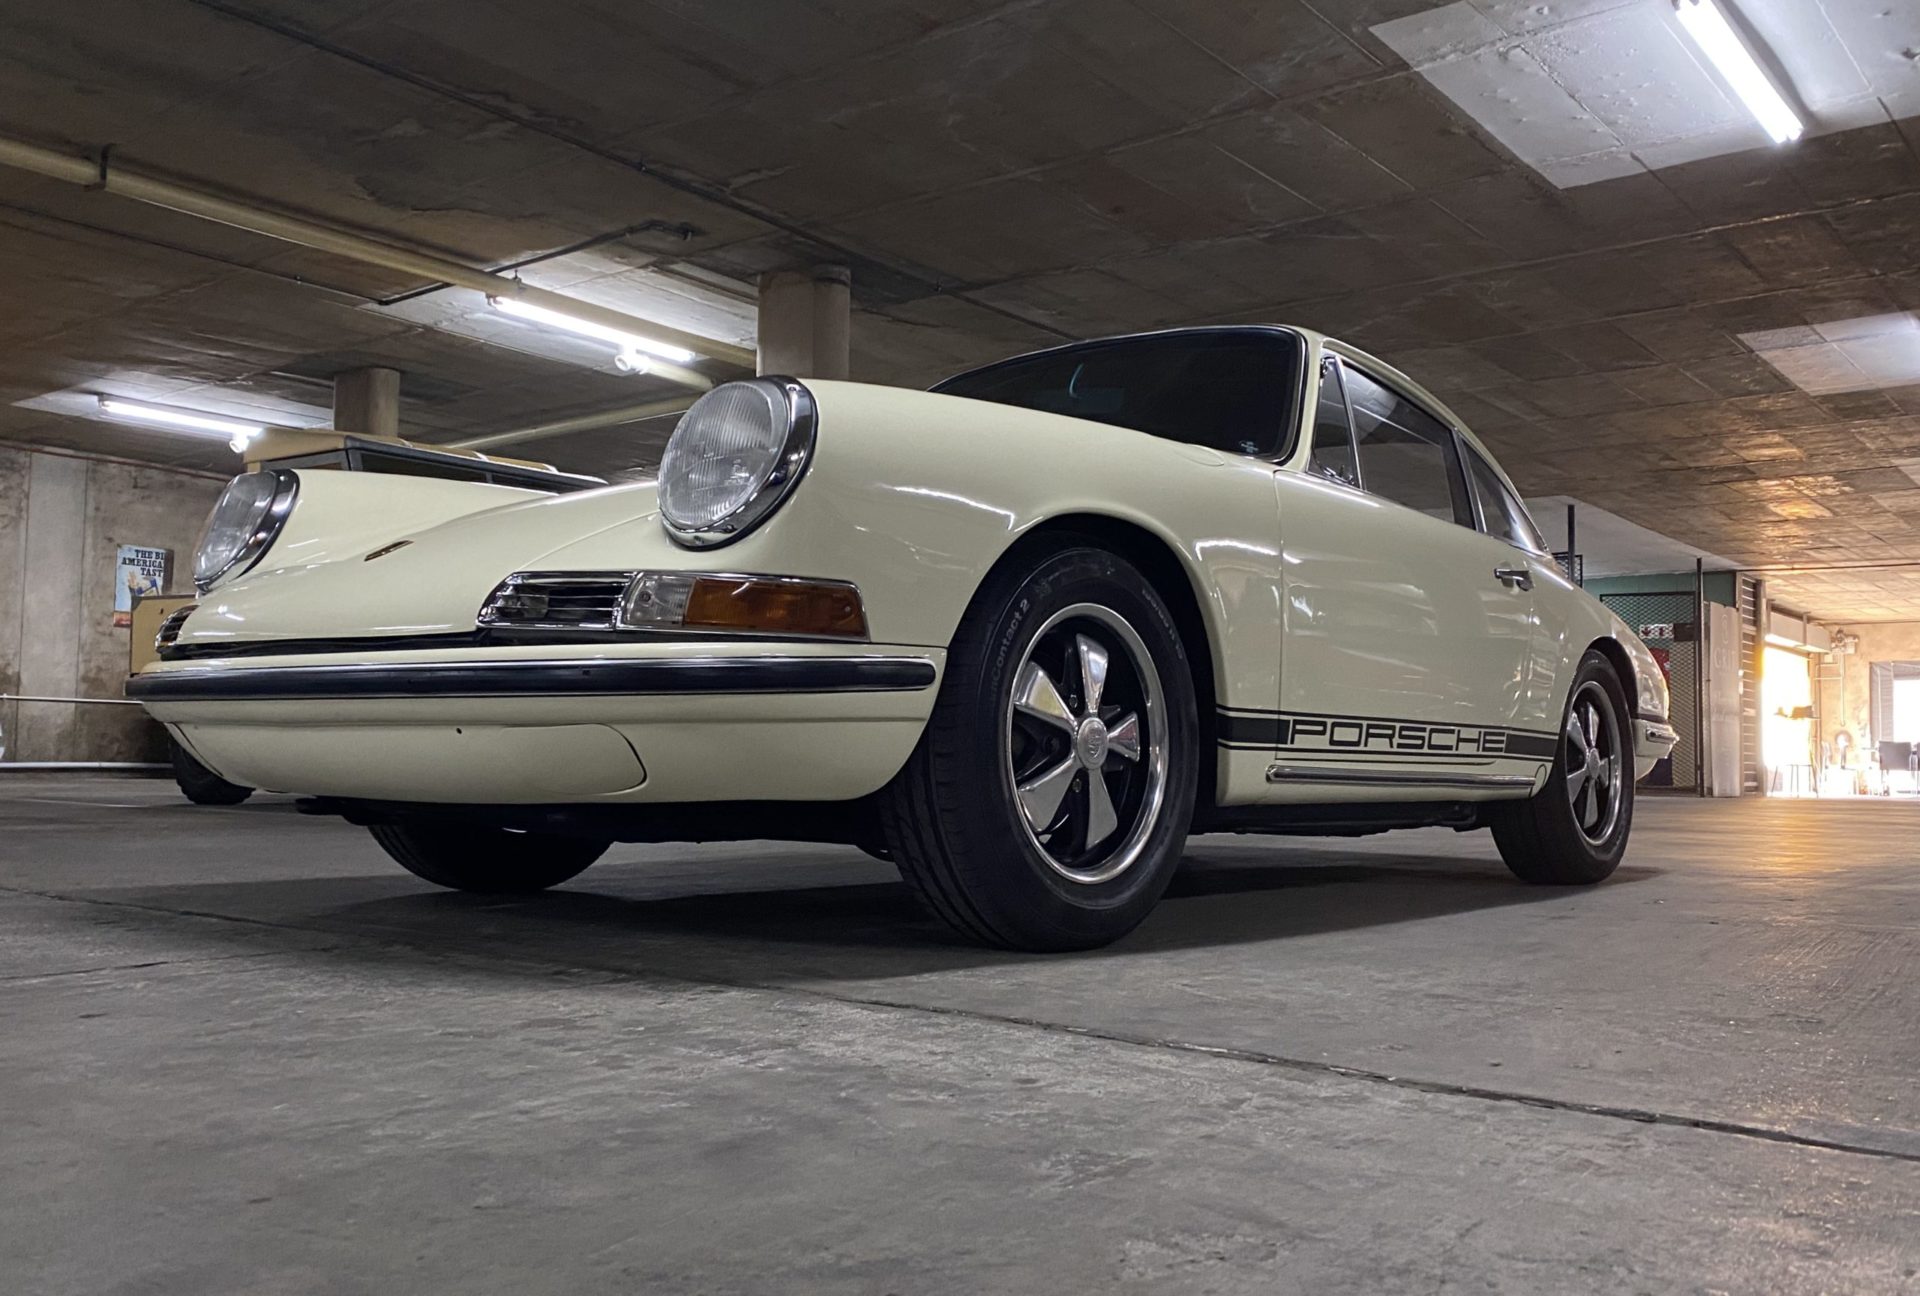 1968 Porsche 912 Outlaw